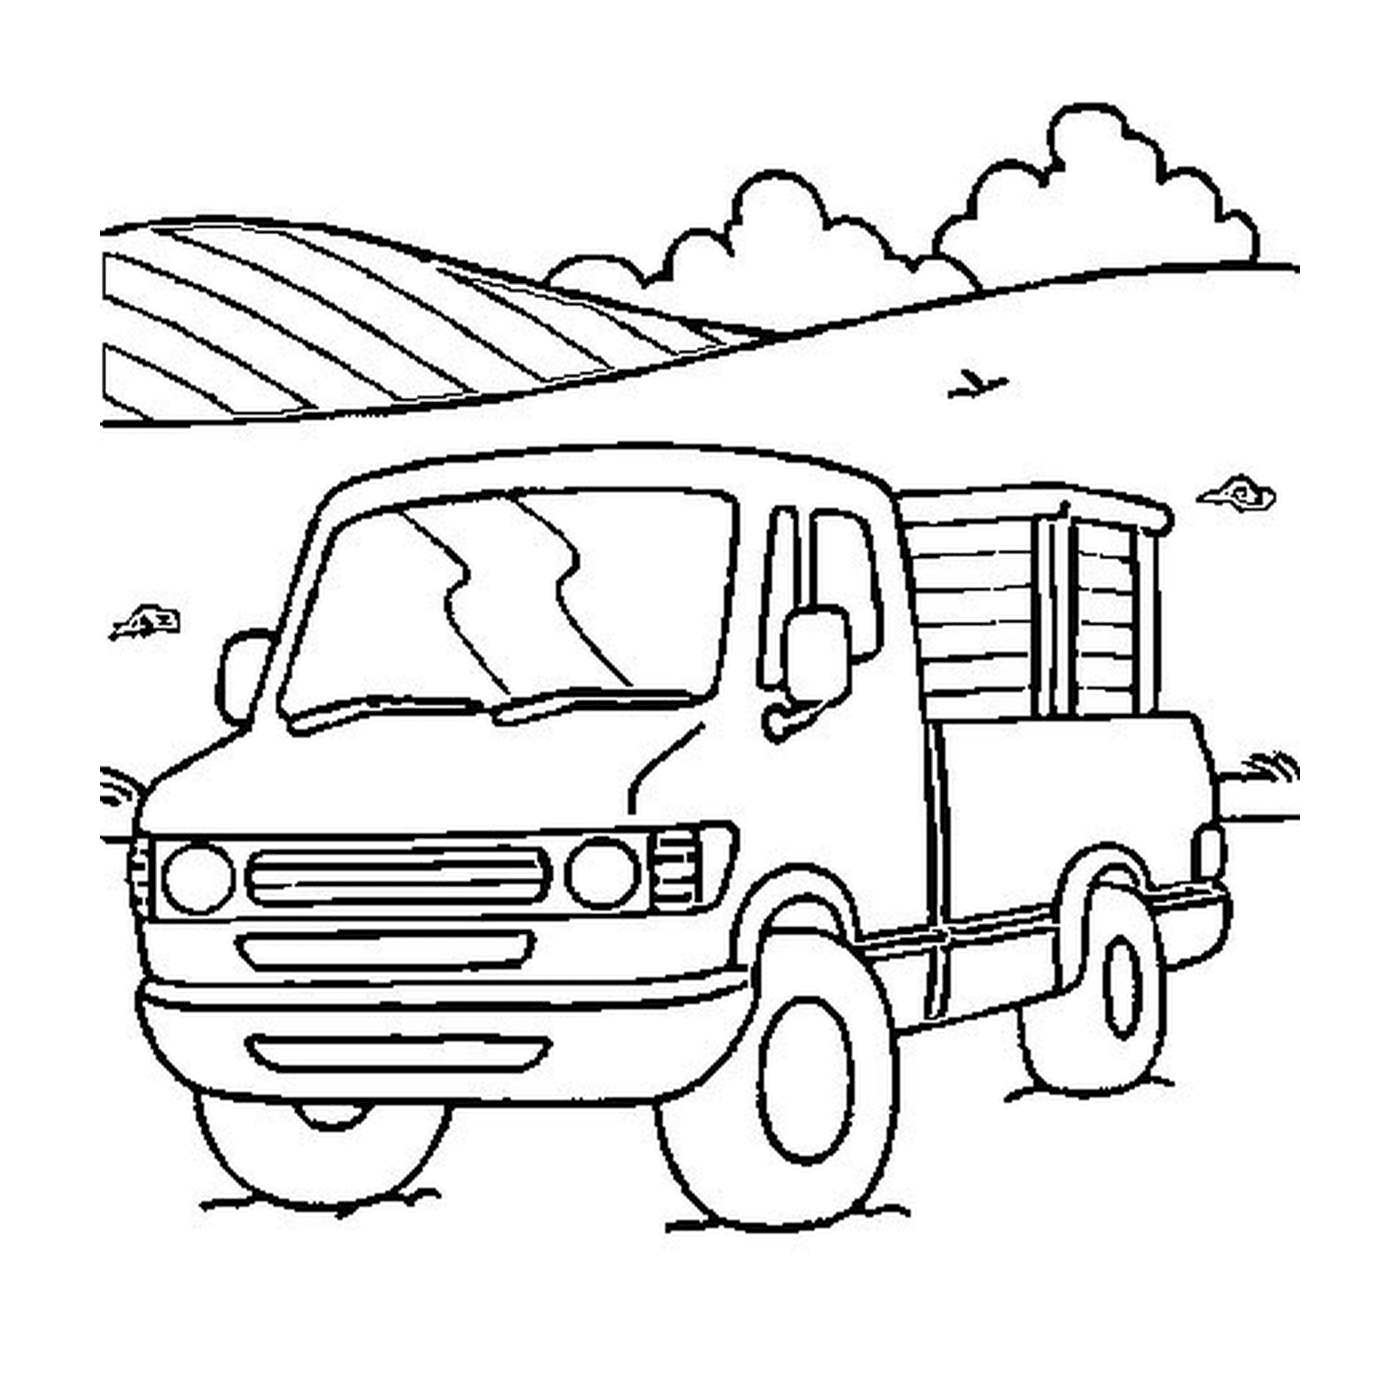  一辆停在山丘附近田地上的卡车 